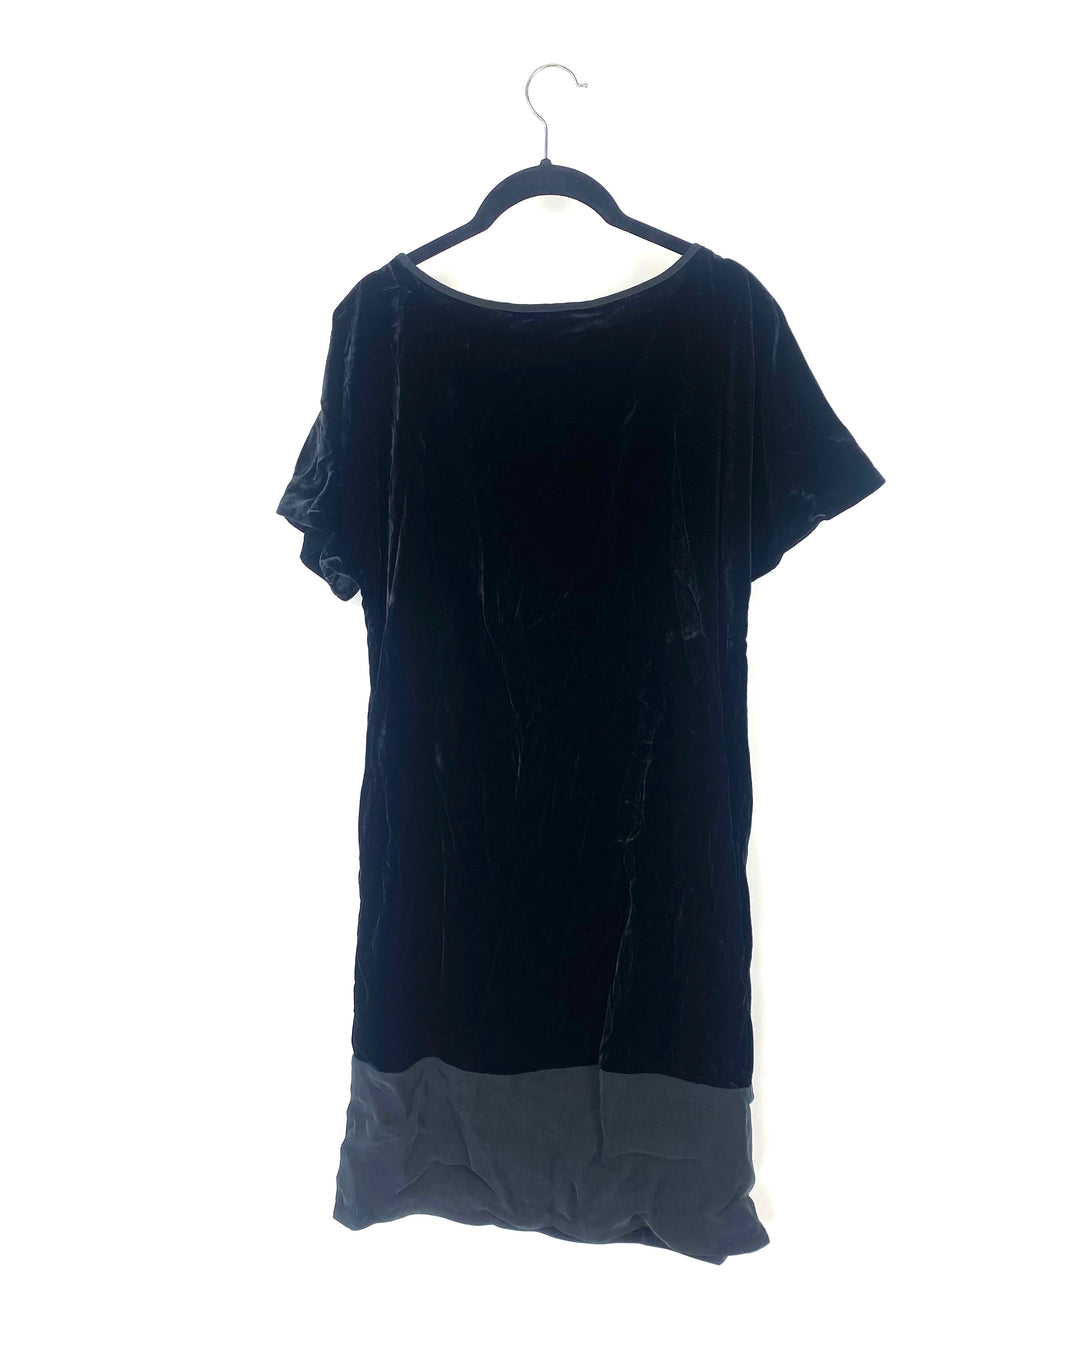 Black Velvet Dress - Size 6